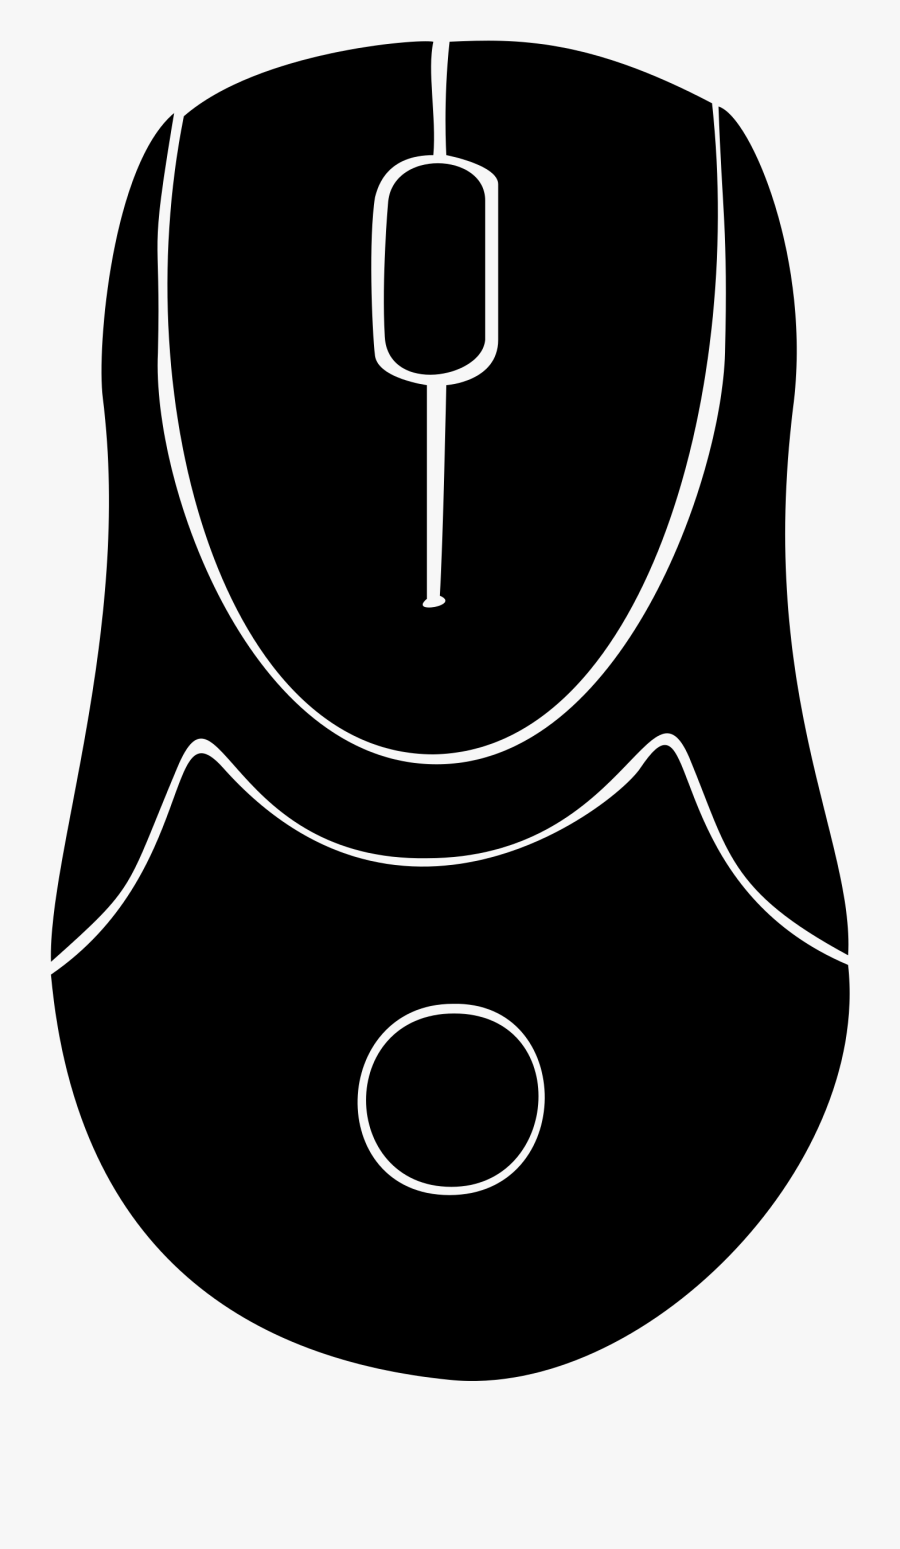 Clipart - Computer Mouse Clipart, Transparent Clipart